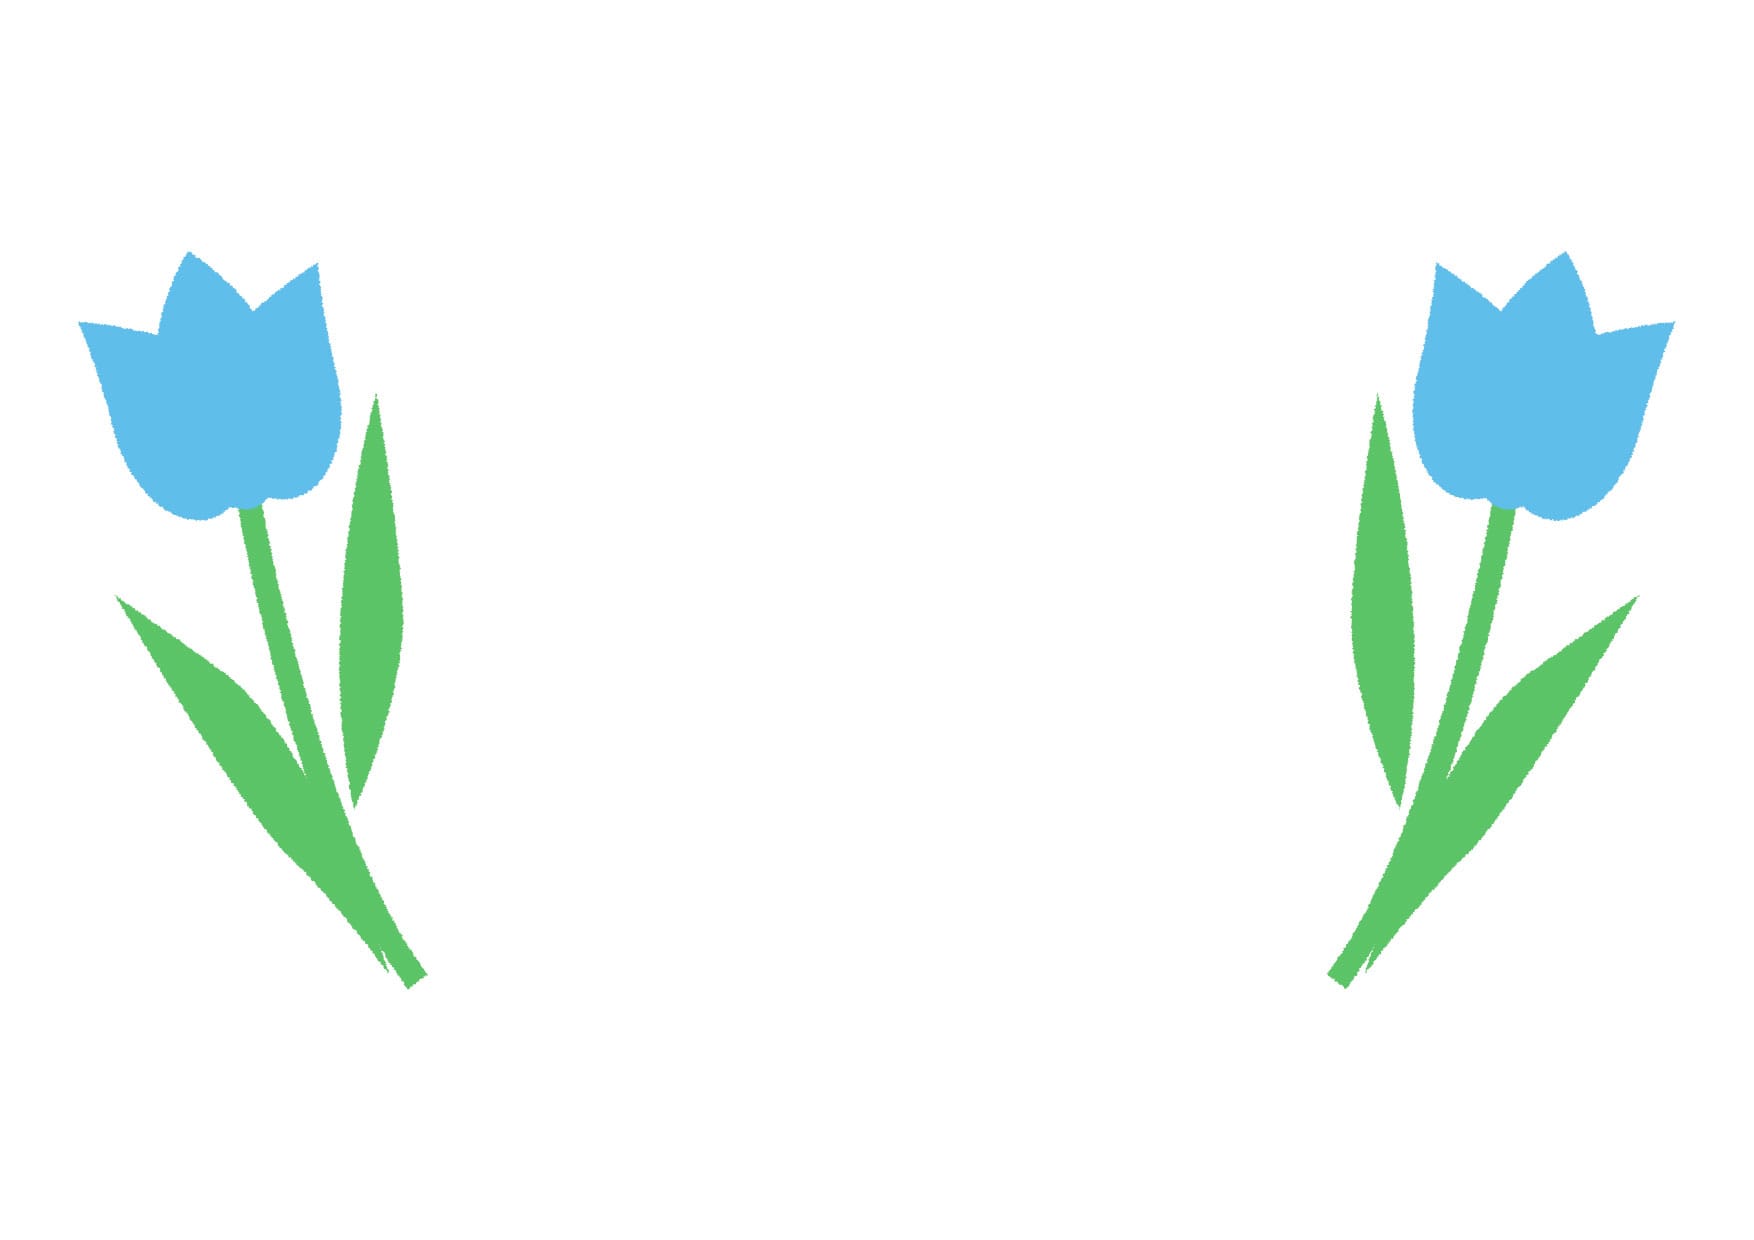 可愛いイラスト無料 チューリップ 青色 背景 Free Illustration Tulip Blue Background 公式 イラスト ダウンロード